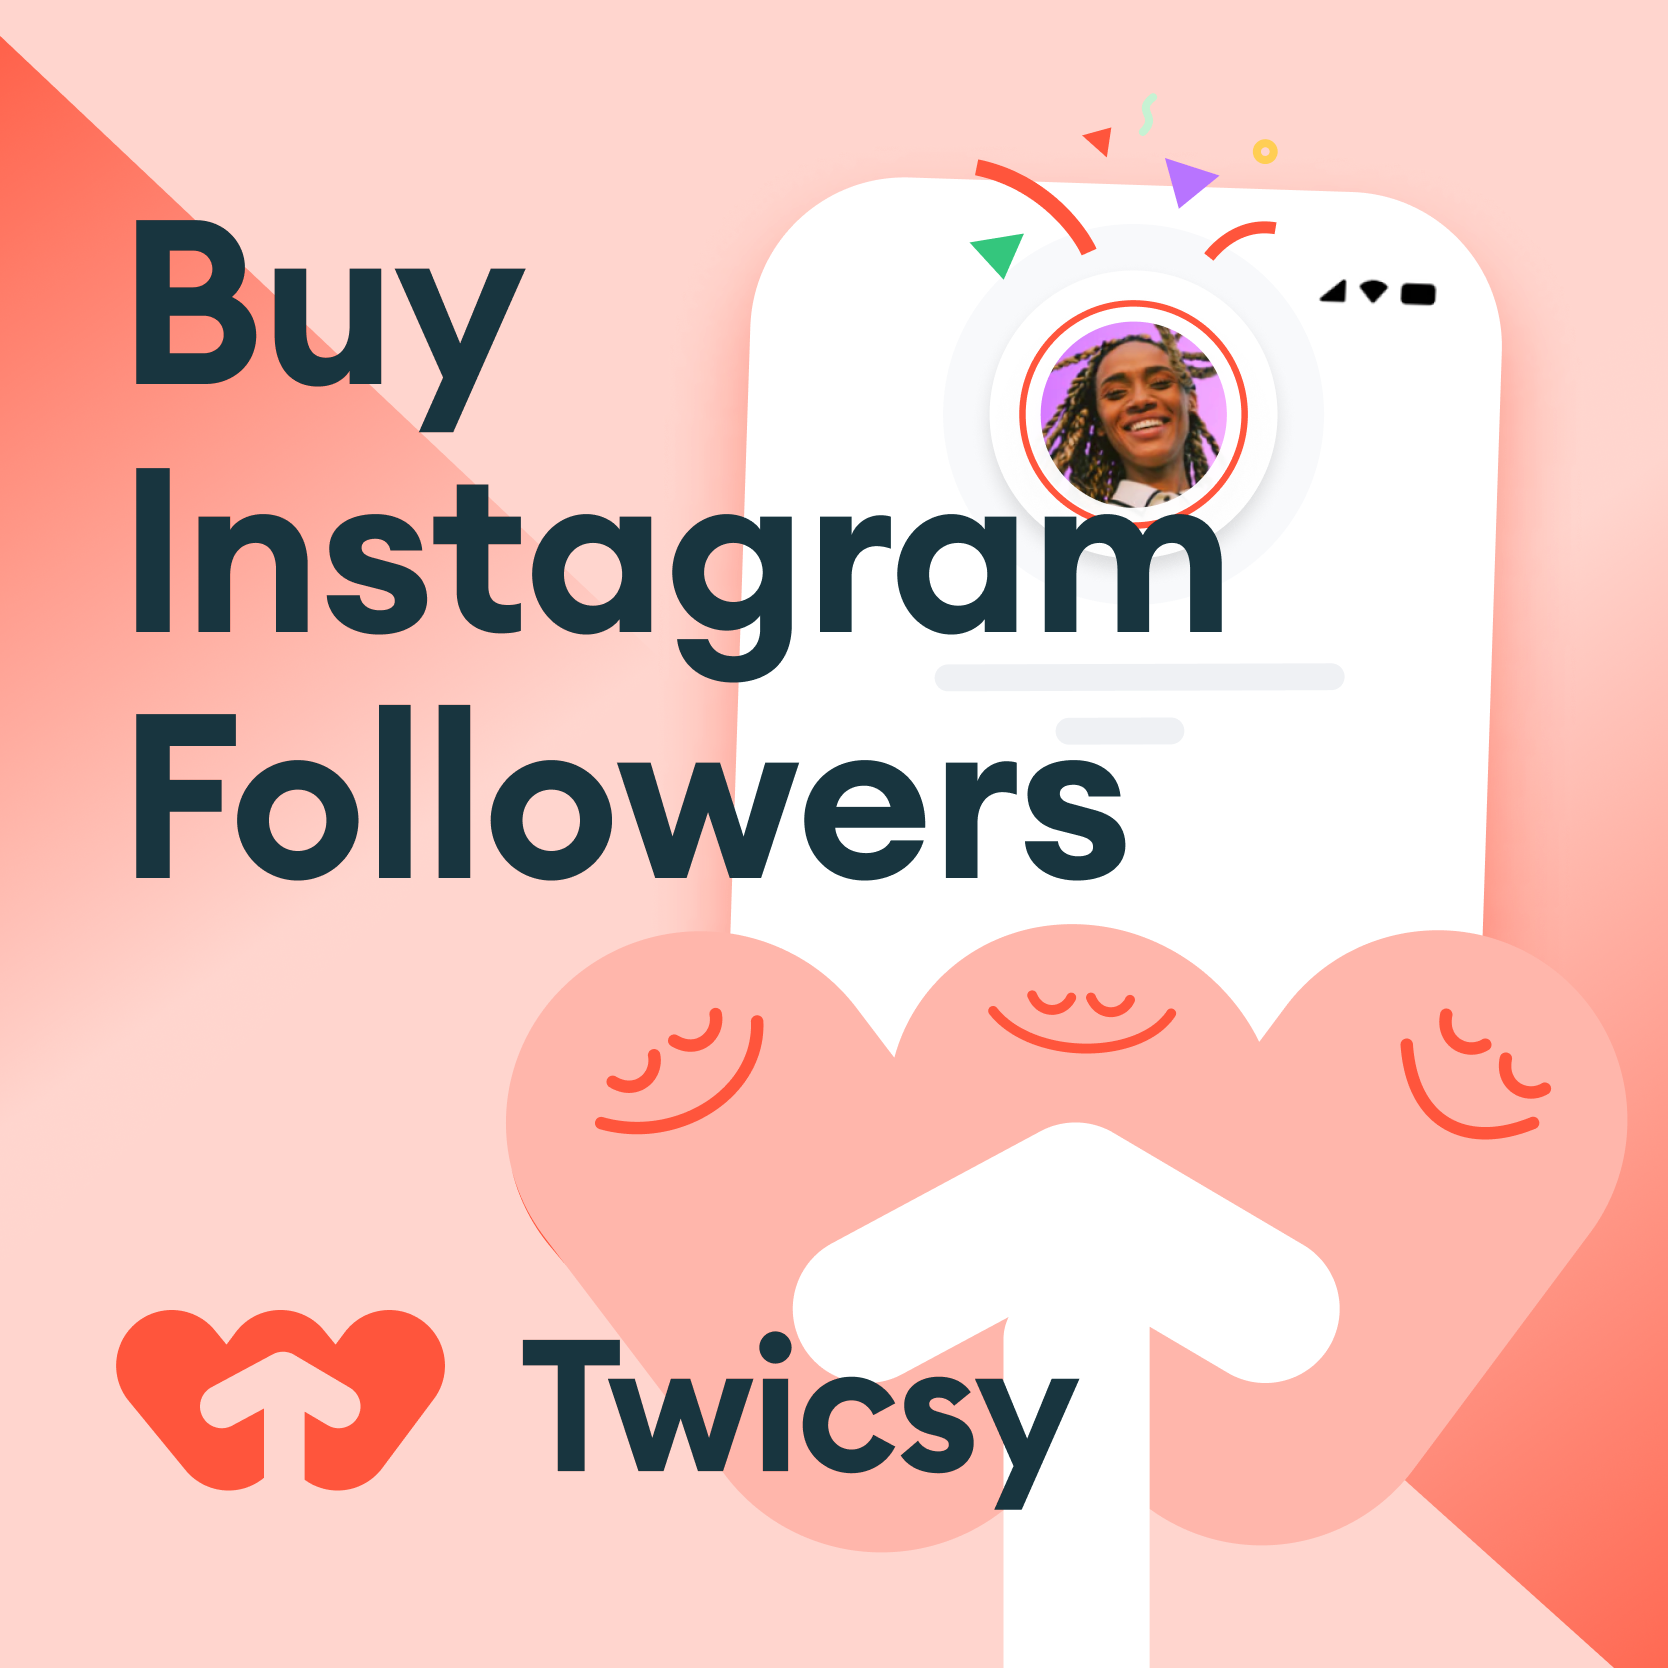 Comprar seguidores de Instagram | Real, entrega instantánea y solo $ 2.97